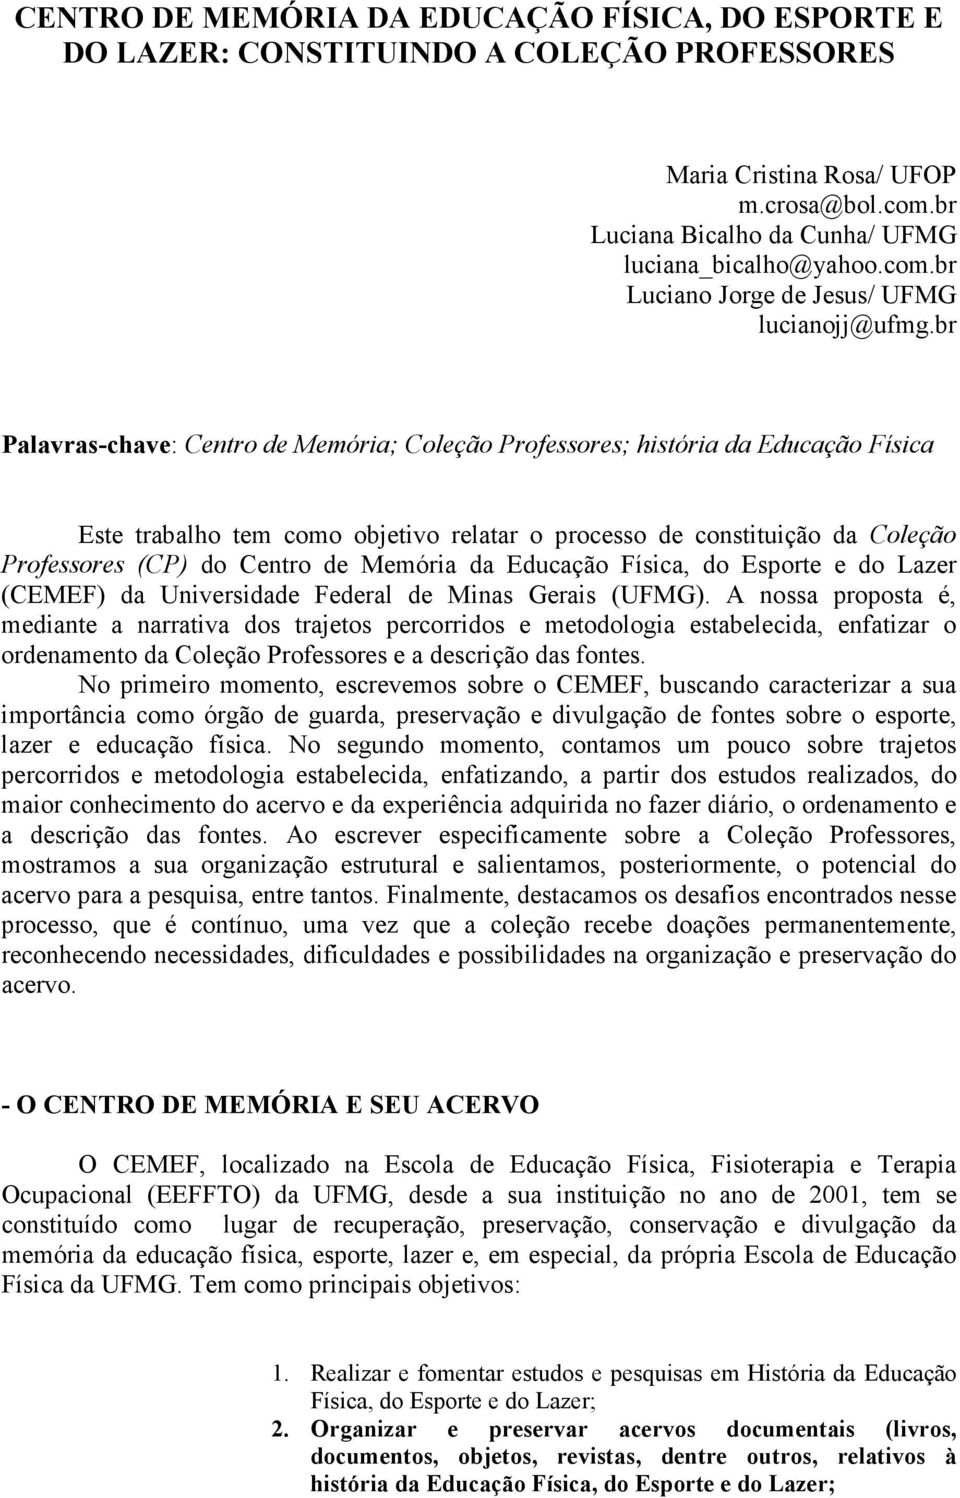 Memória da Educação Física, do Esporte e do Lazer (CEMEF) da Universidade Federal de Minas Gerais (UFMG).